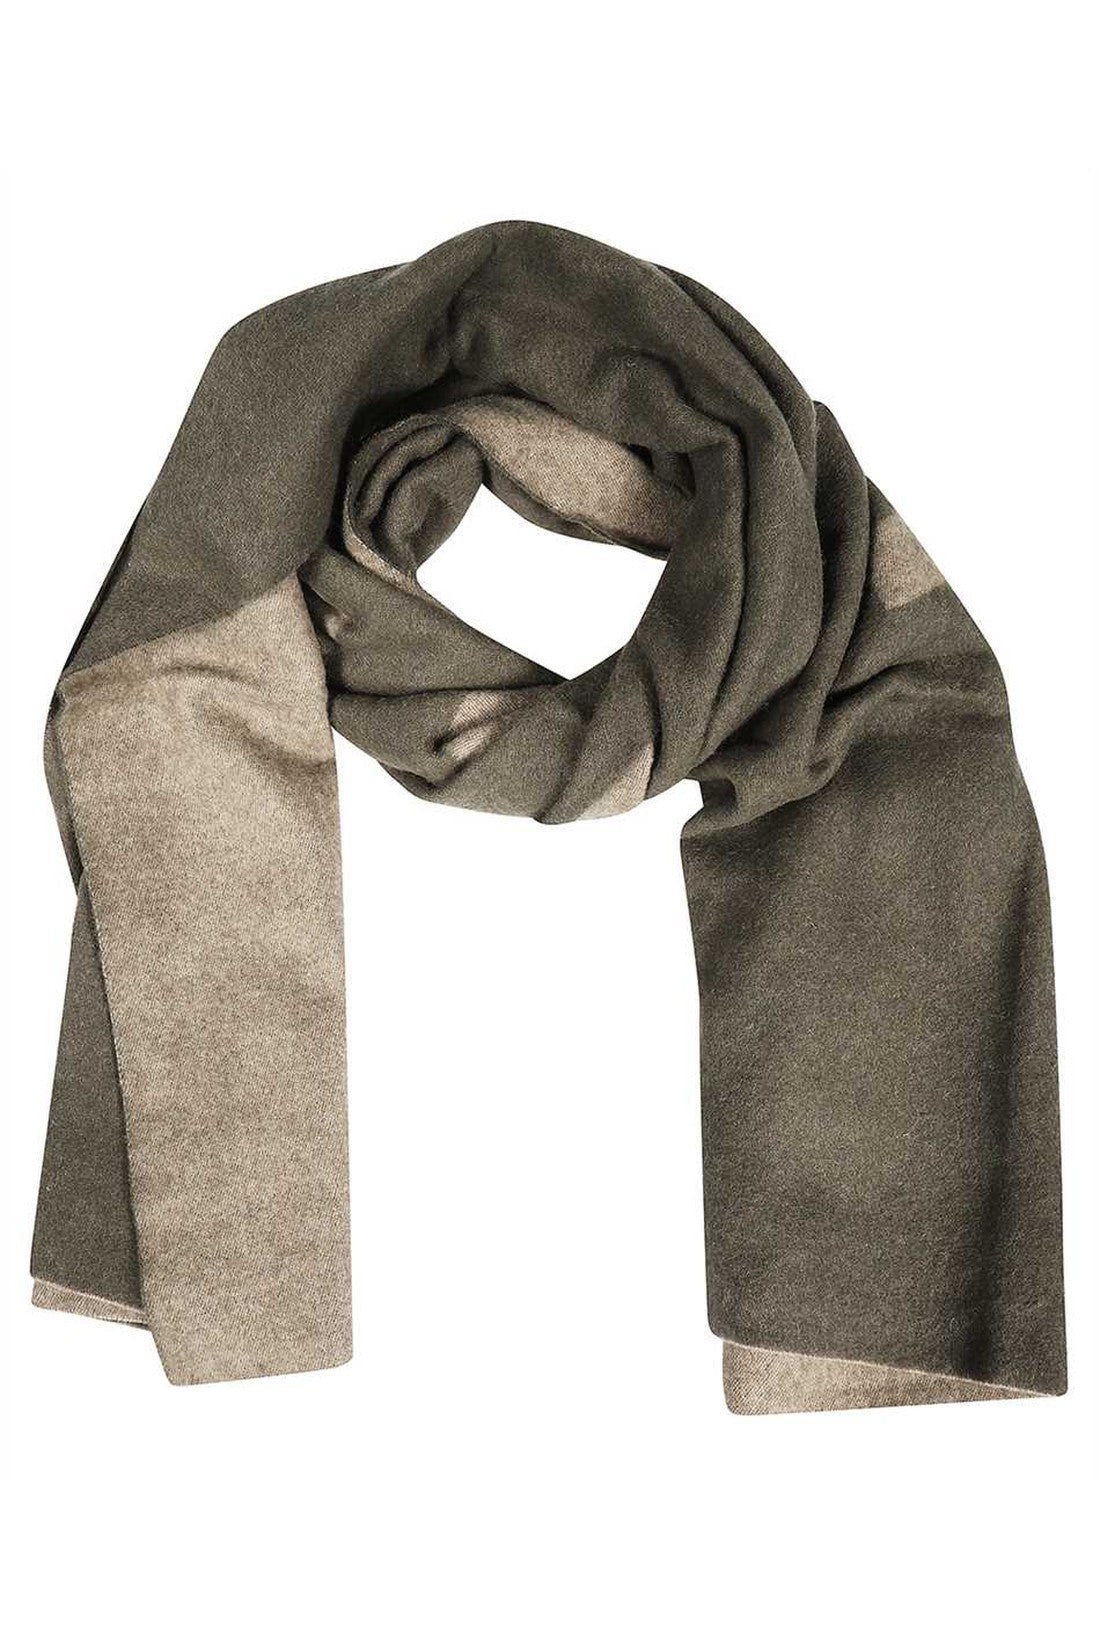 Wool scarf-Les Deux-OUTLET-SALE-TU-ARCHIVIST